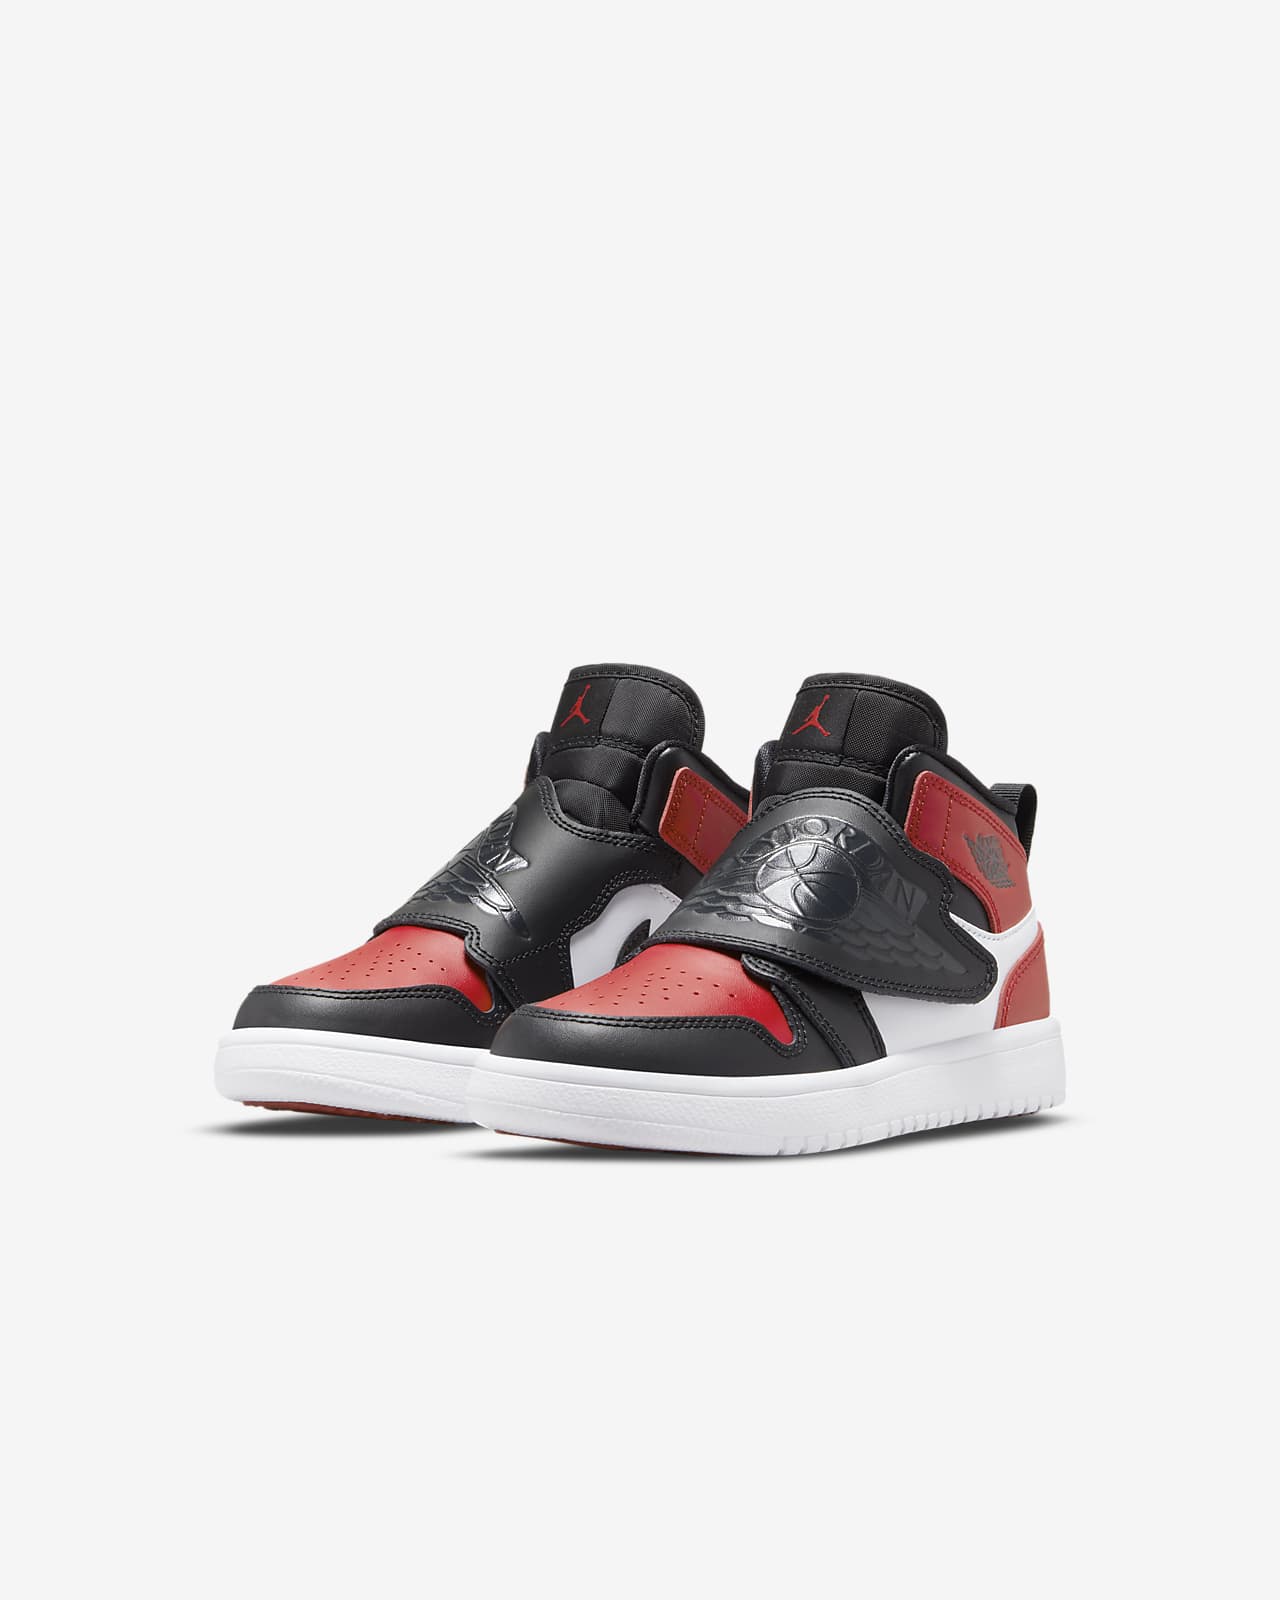 Sky Jordan 1 Zapatillas - Niño/a pequeño/a. Nike